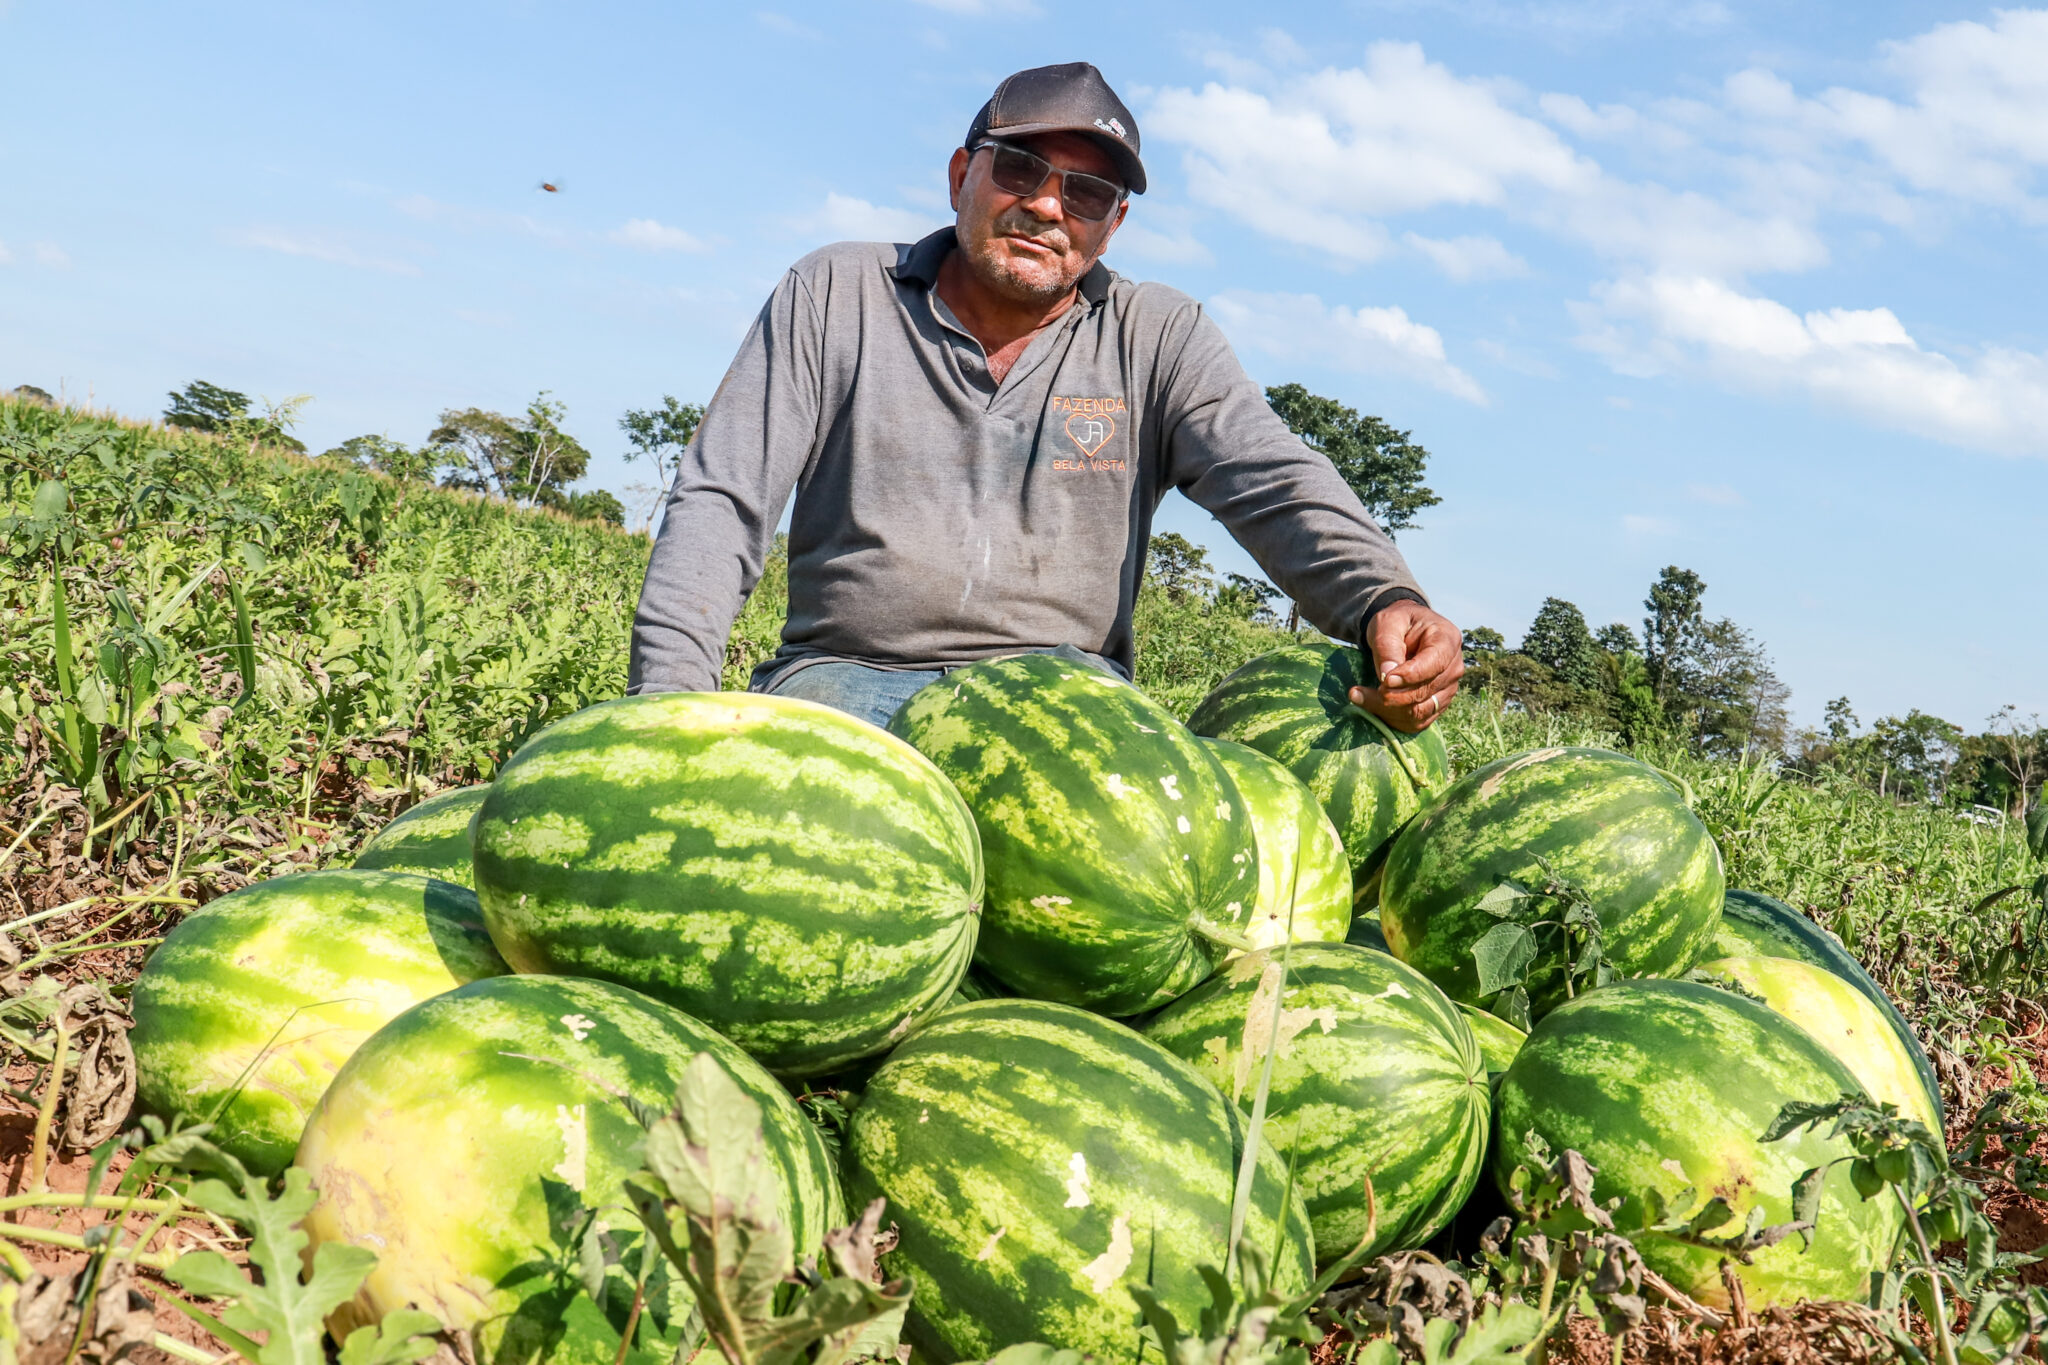 Estado incentiva produção de melancia no Acre